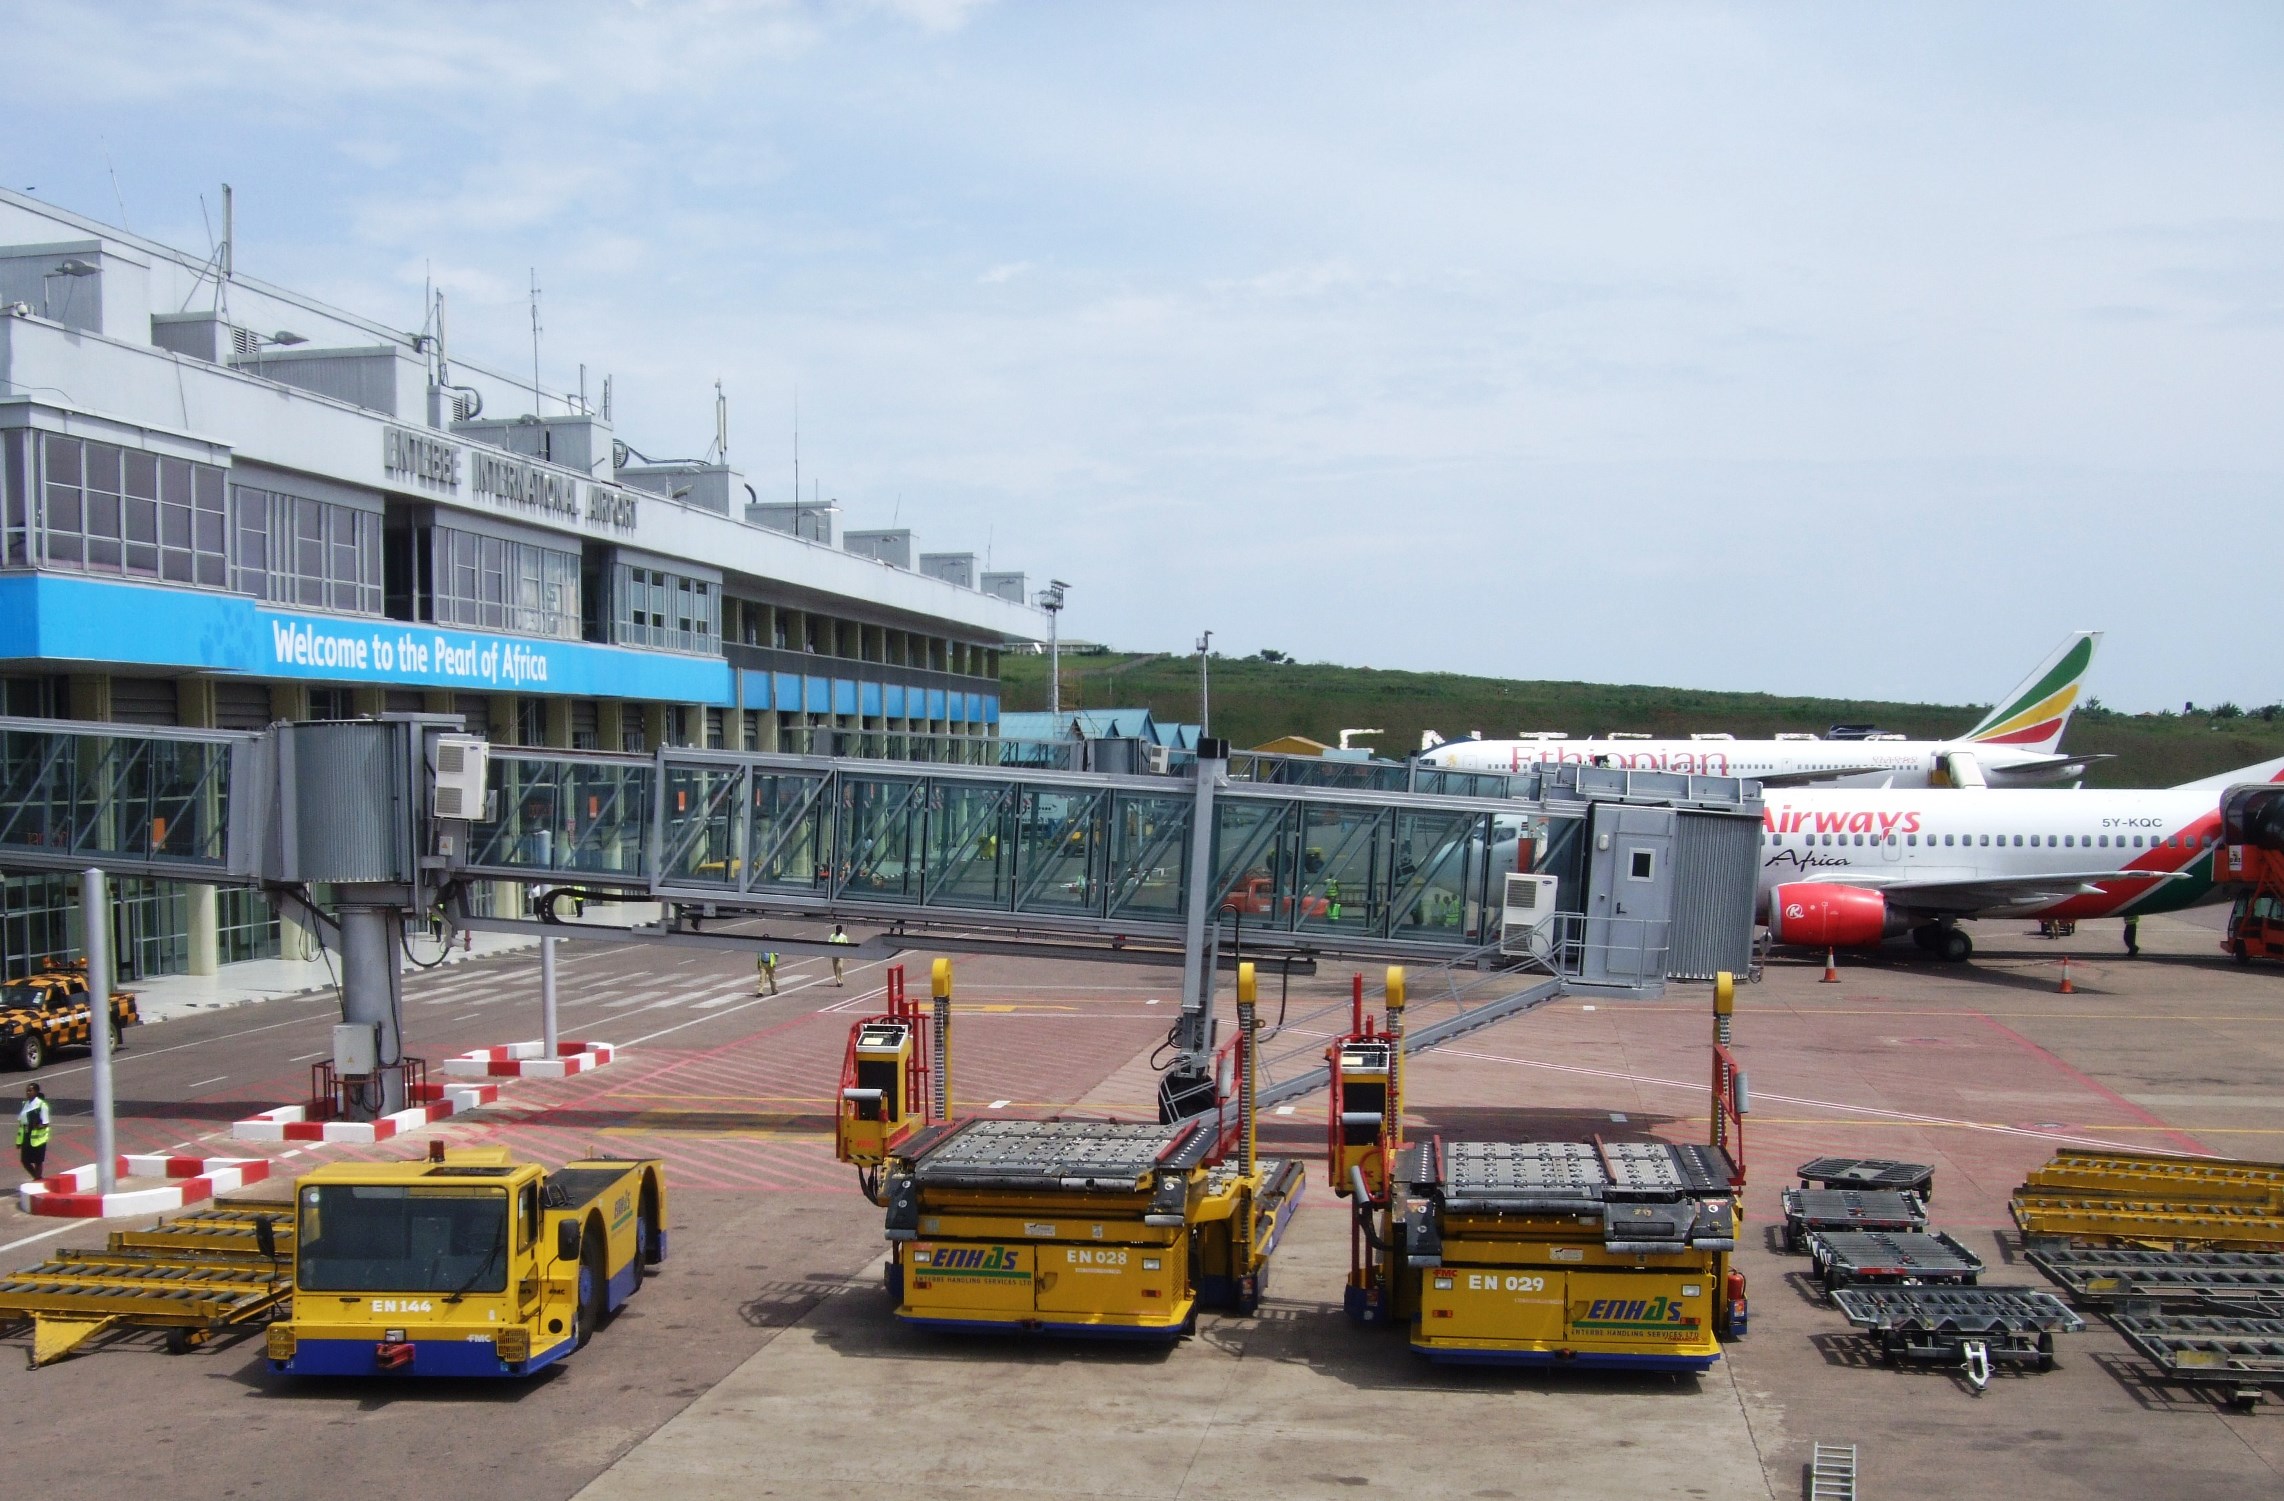 Çin, Uganda’daki Entebbe Havalimanı’na El mi Koyacak?